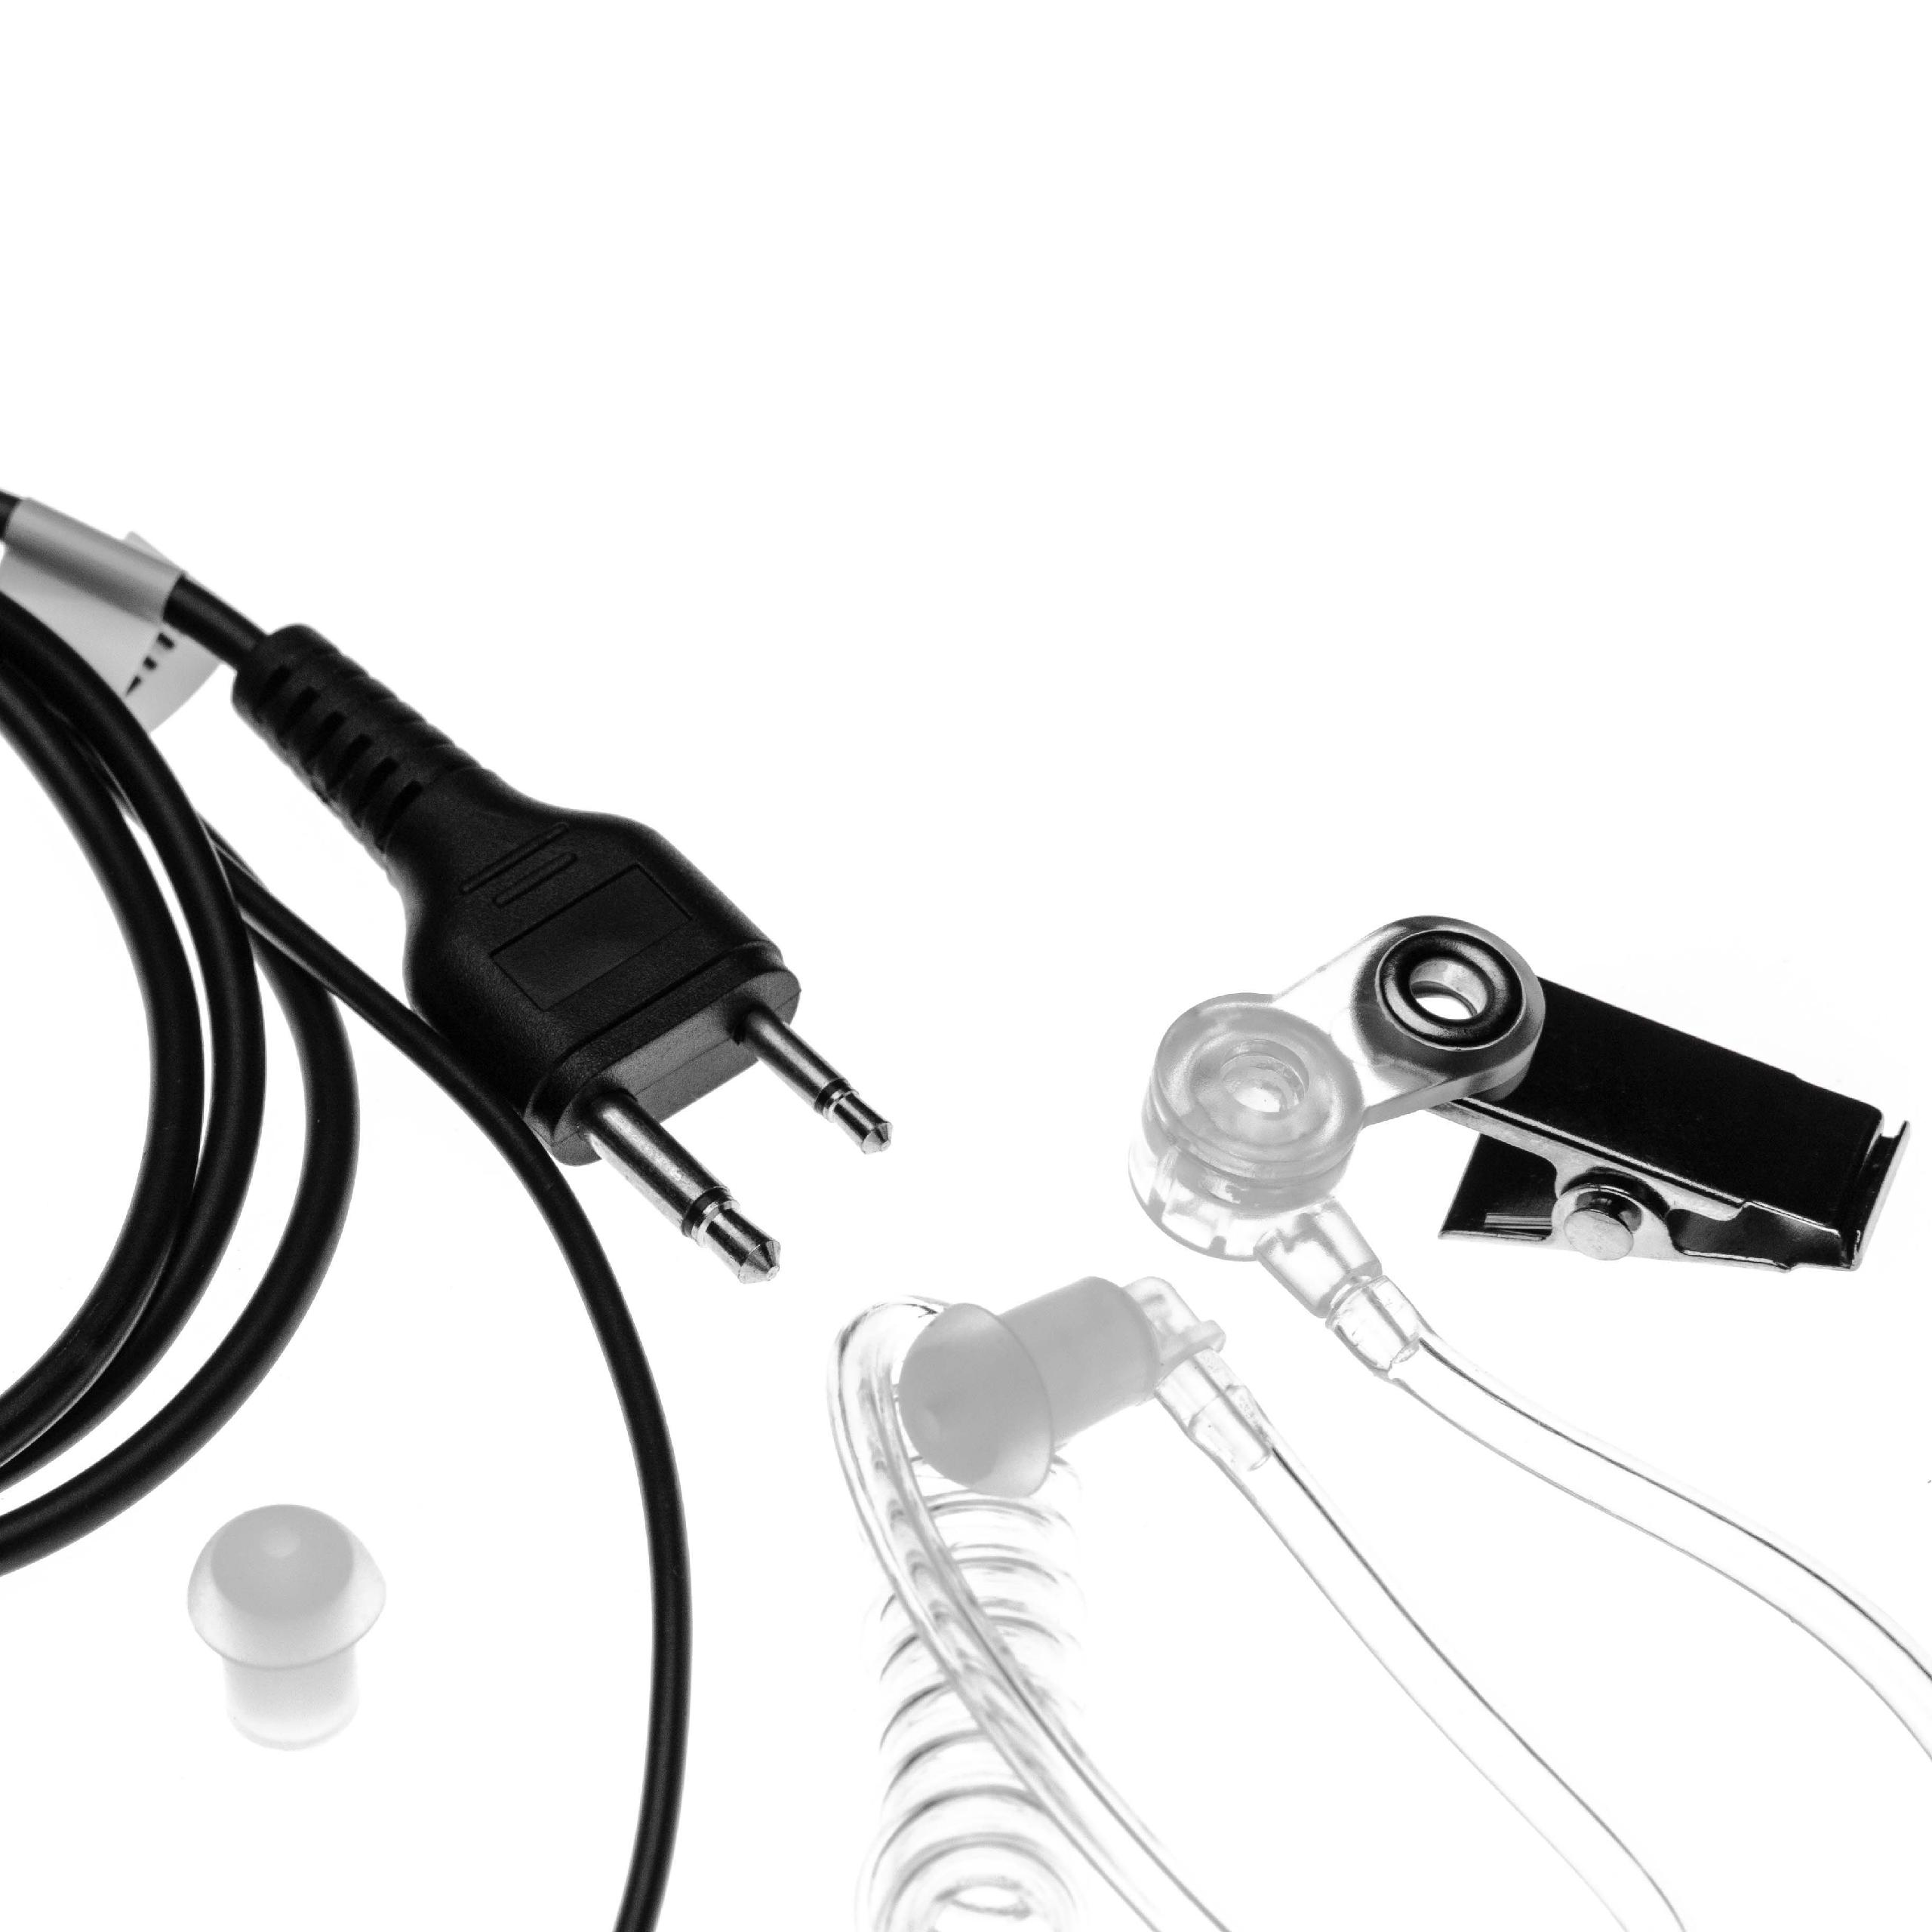 VHBW kompatibel mit IC-T22A, Headset On-ear IC-T22, IC-T2E, IC-T22E, IC-T2A, Icom IC-T21E, IC-T21A, / transparent IC-T21CP, schwarz IC-T2